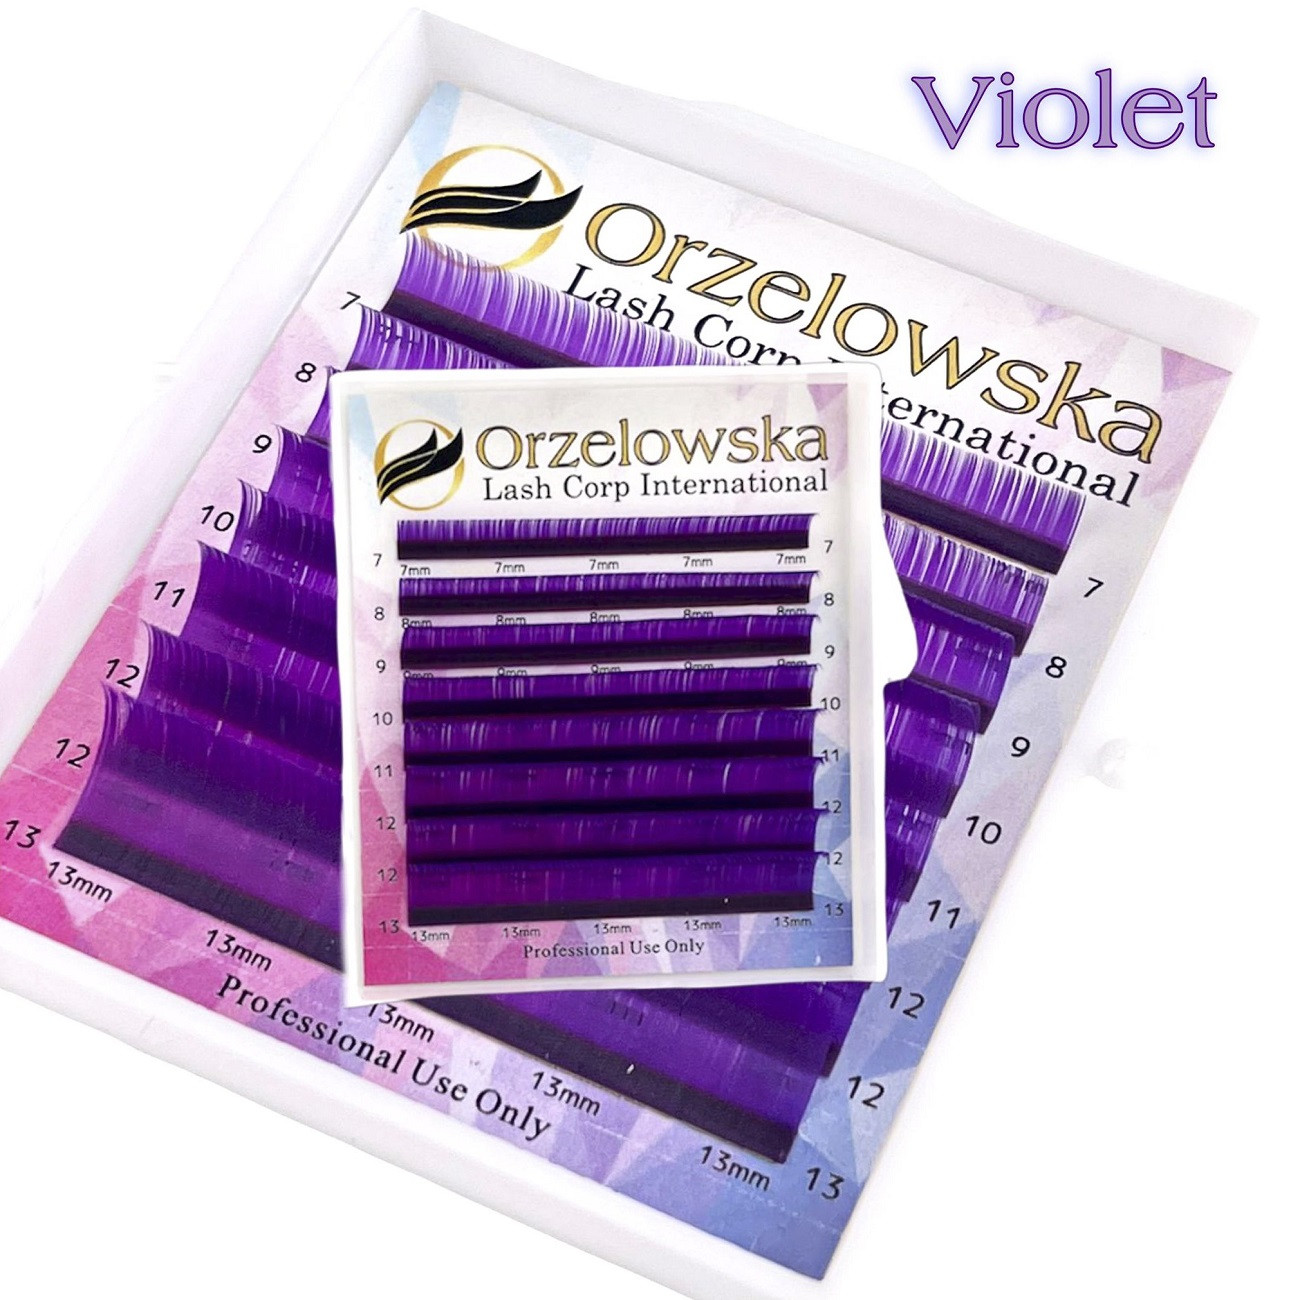 0.07 CC Violet, Extensii gene colorate pastel, cutie cu 8 linii, Orzelowska